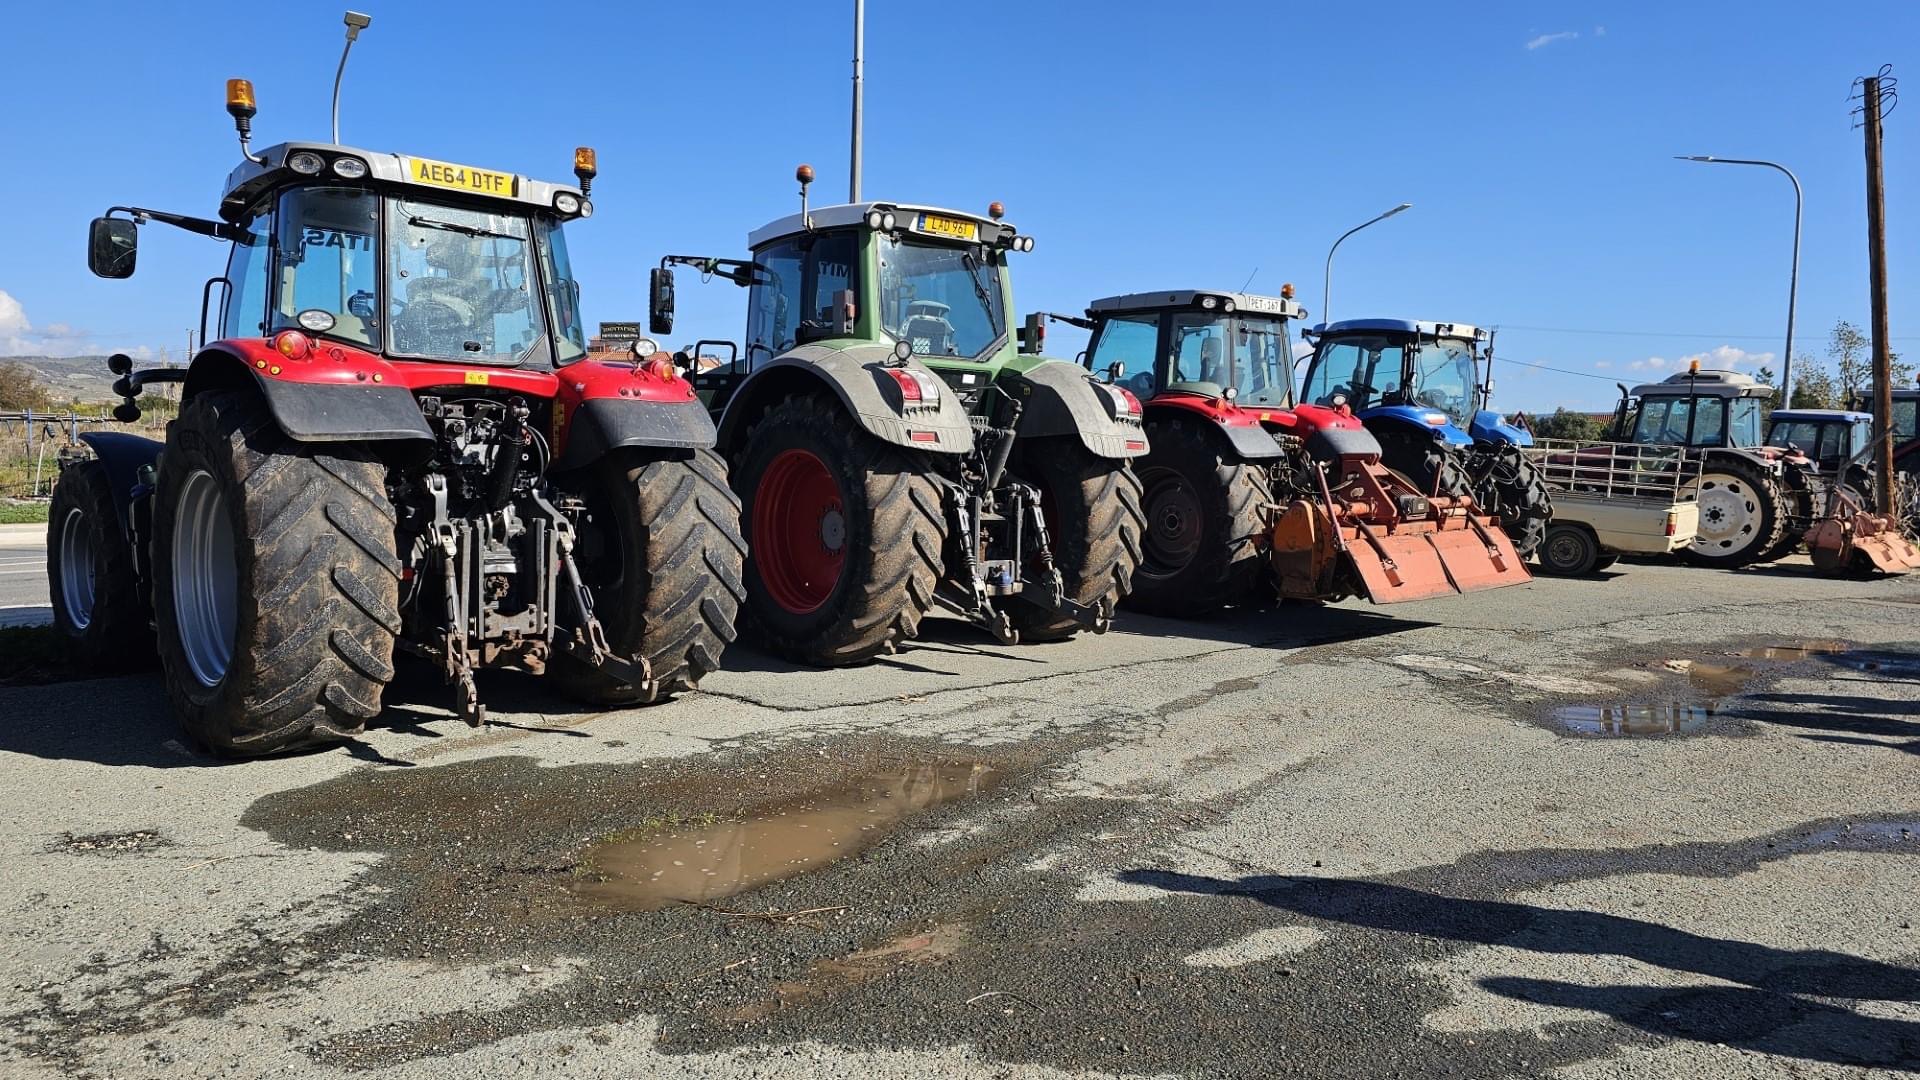 25 τρακτέρ με 50 αγρότες έκλεισαν τον Παλιό δρόμο Τίμης (ΦΩΤΟ)